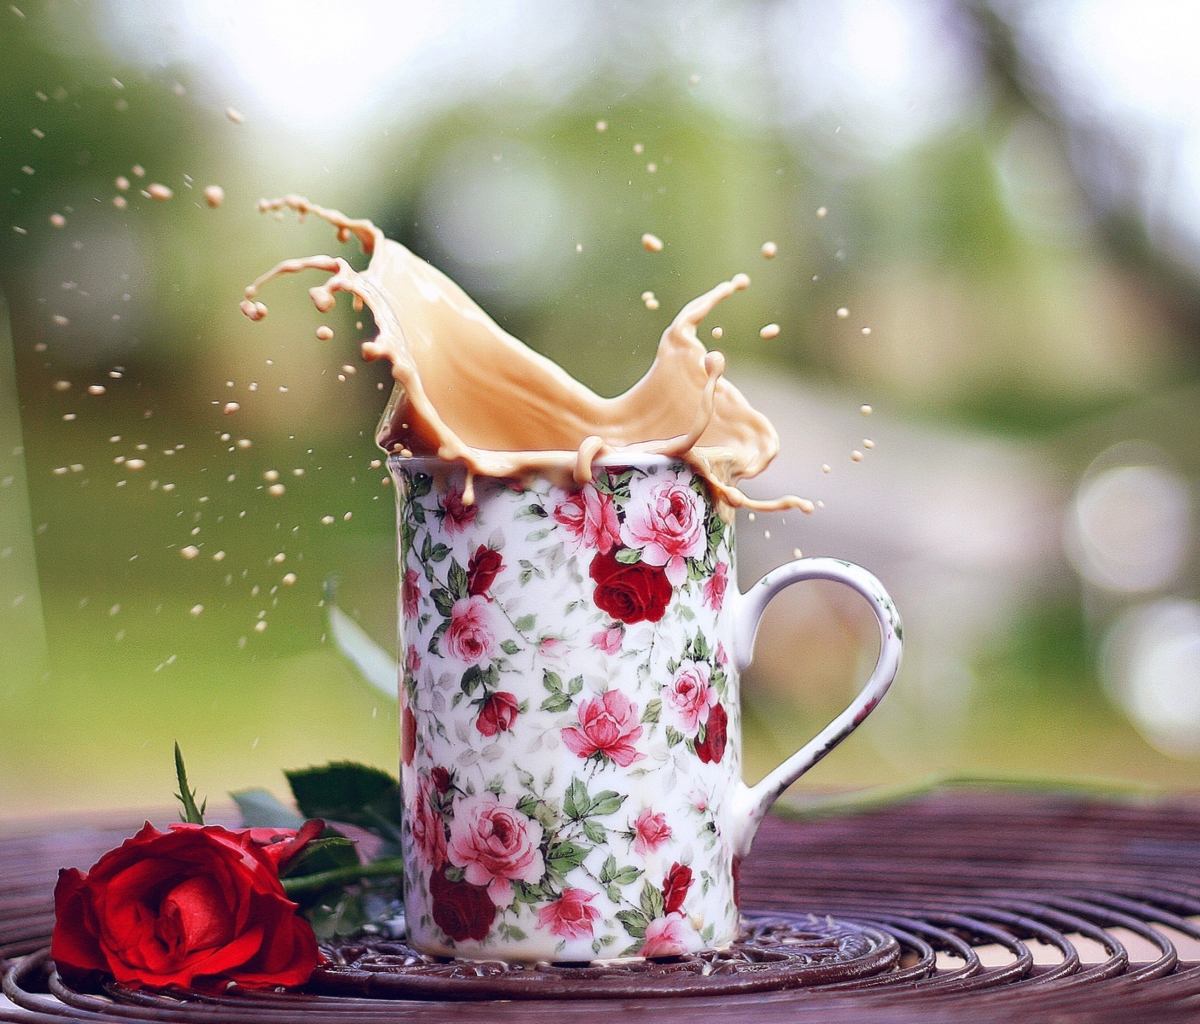 Обои Coffee With Milk In Flower Mug 1200x1024